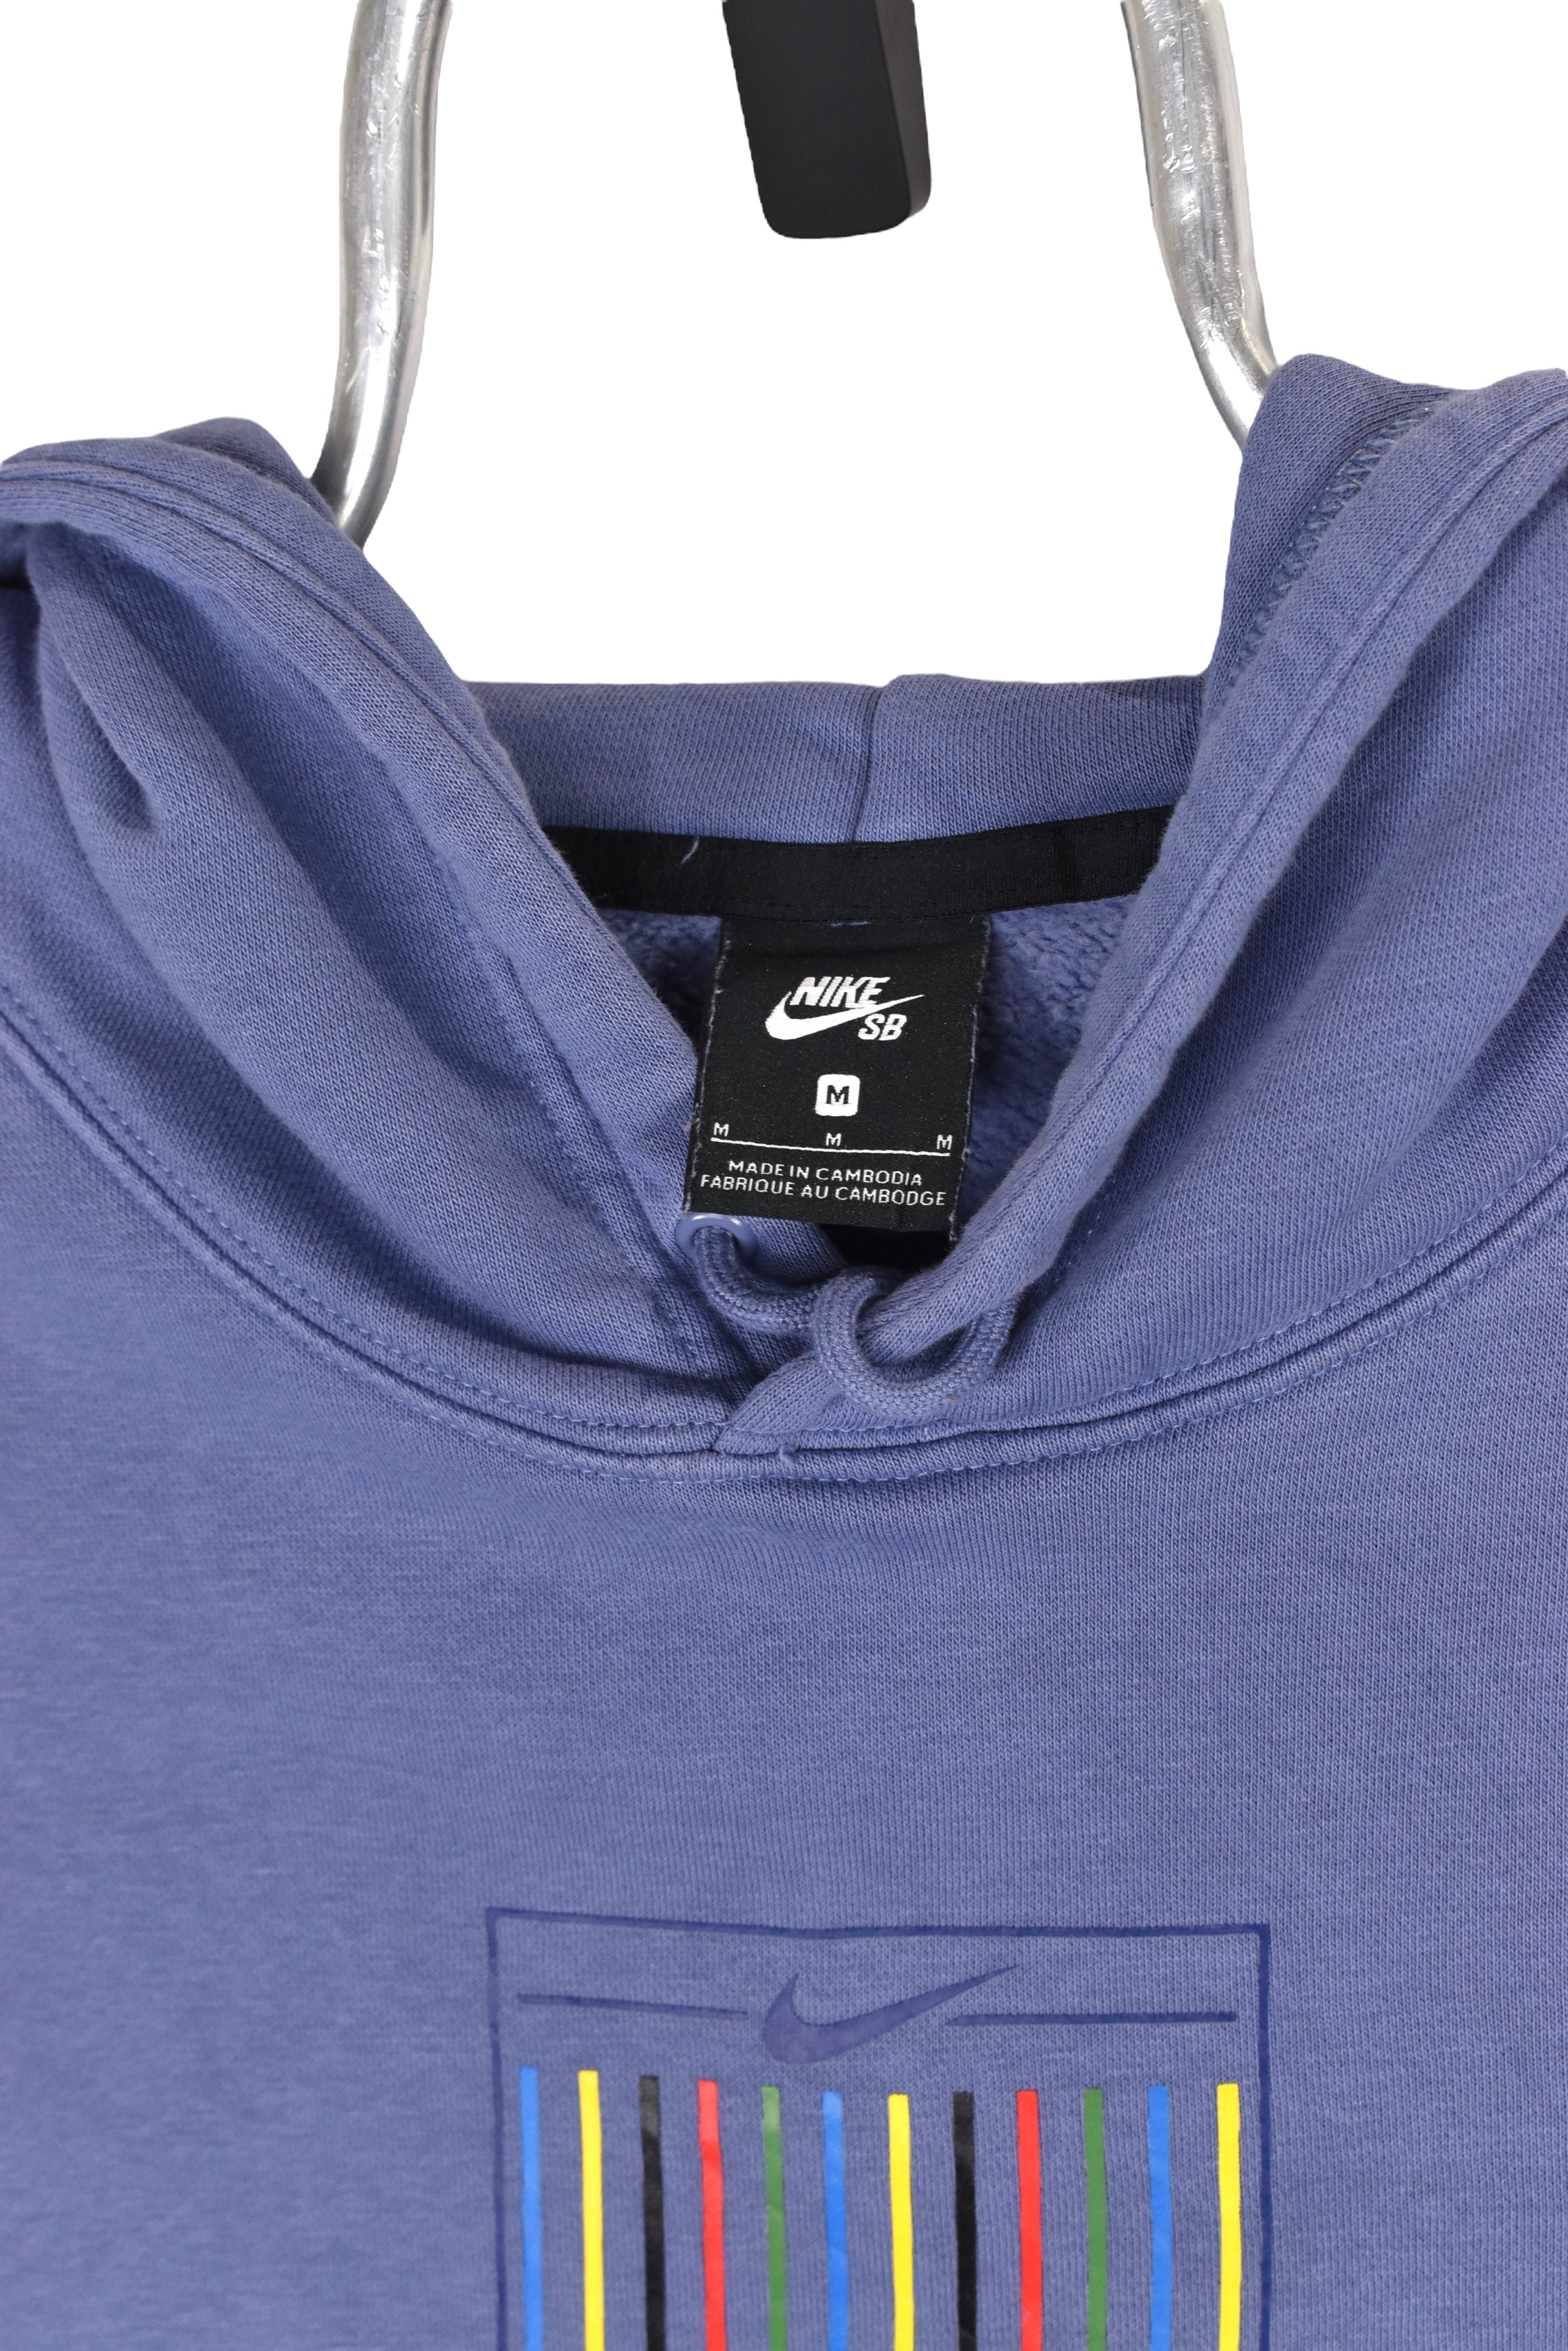 Vintage Nike hoodie (M), blue graphic sweatshirt